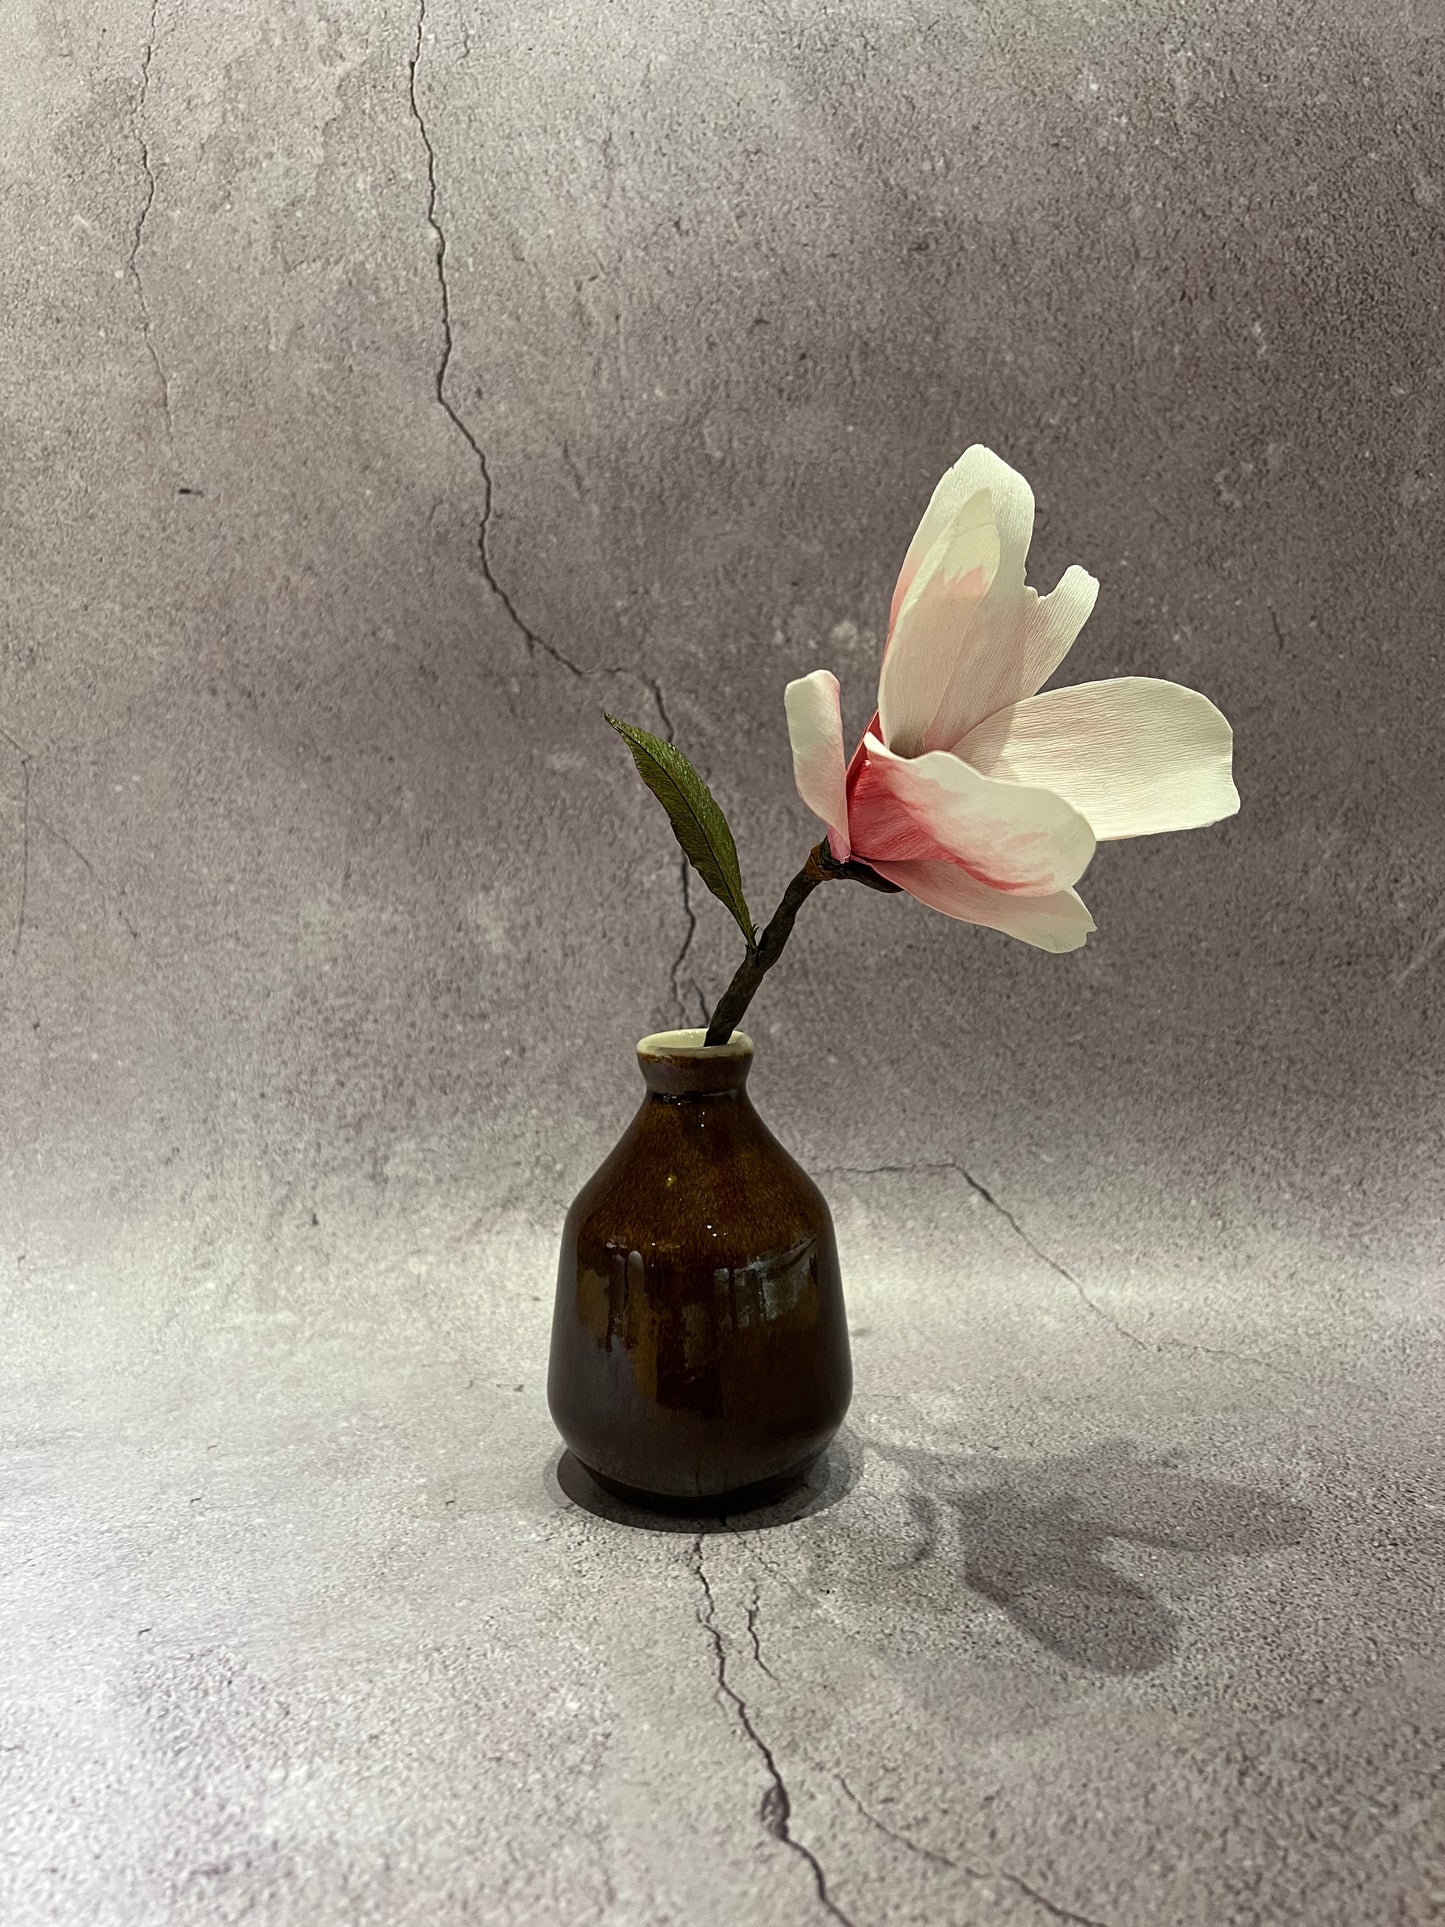 Magnolia in vase